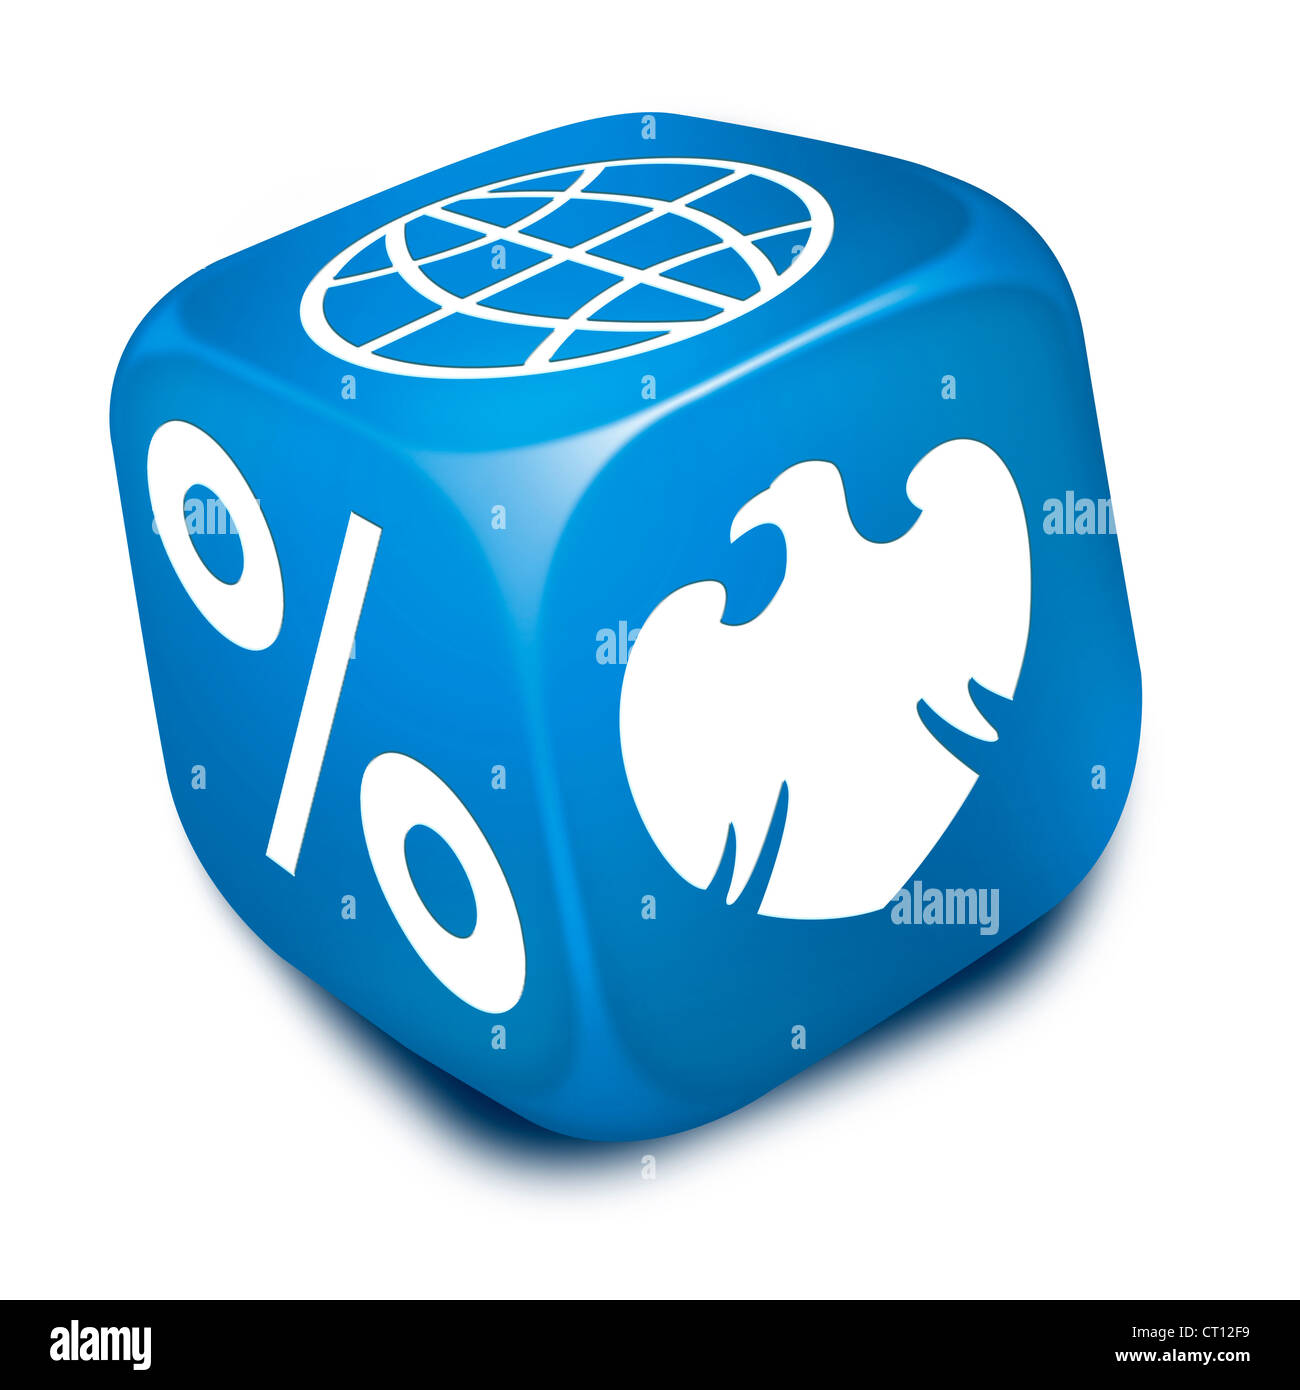 Blaue Würfel mit Barclays Bank Adler Symbol, Prozentsatz und die Welt/Welt Symbole auf den Flächen Stockfoto